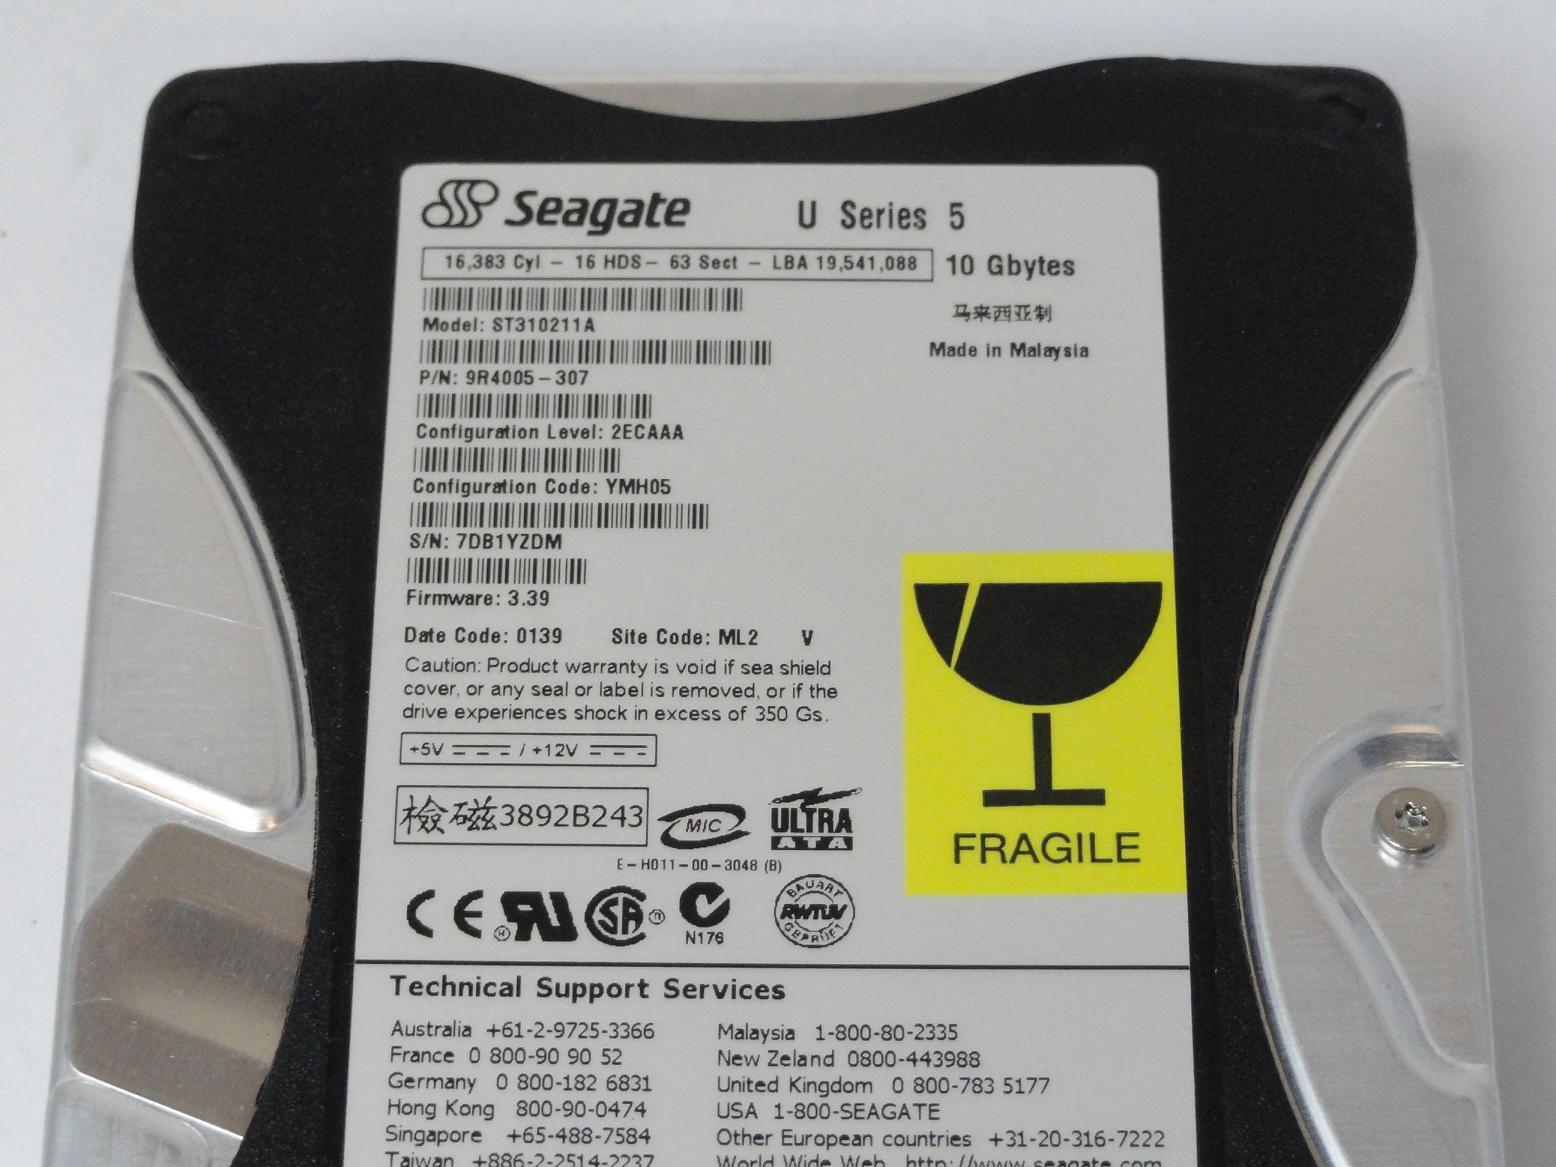 PR10973_9R4005-307_Seagate 10GB IDE 5400rpm 3.5in HDD - Image3